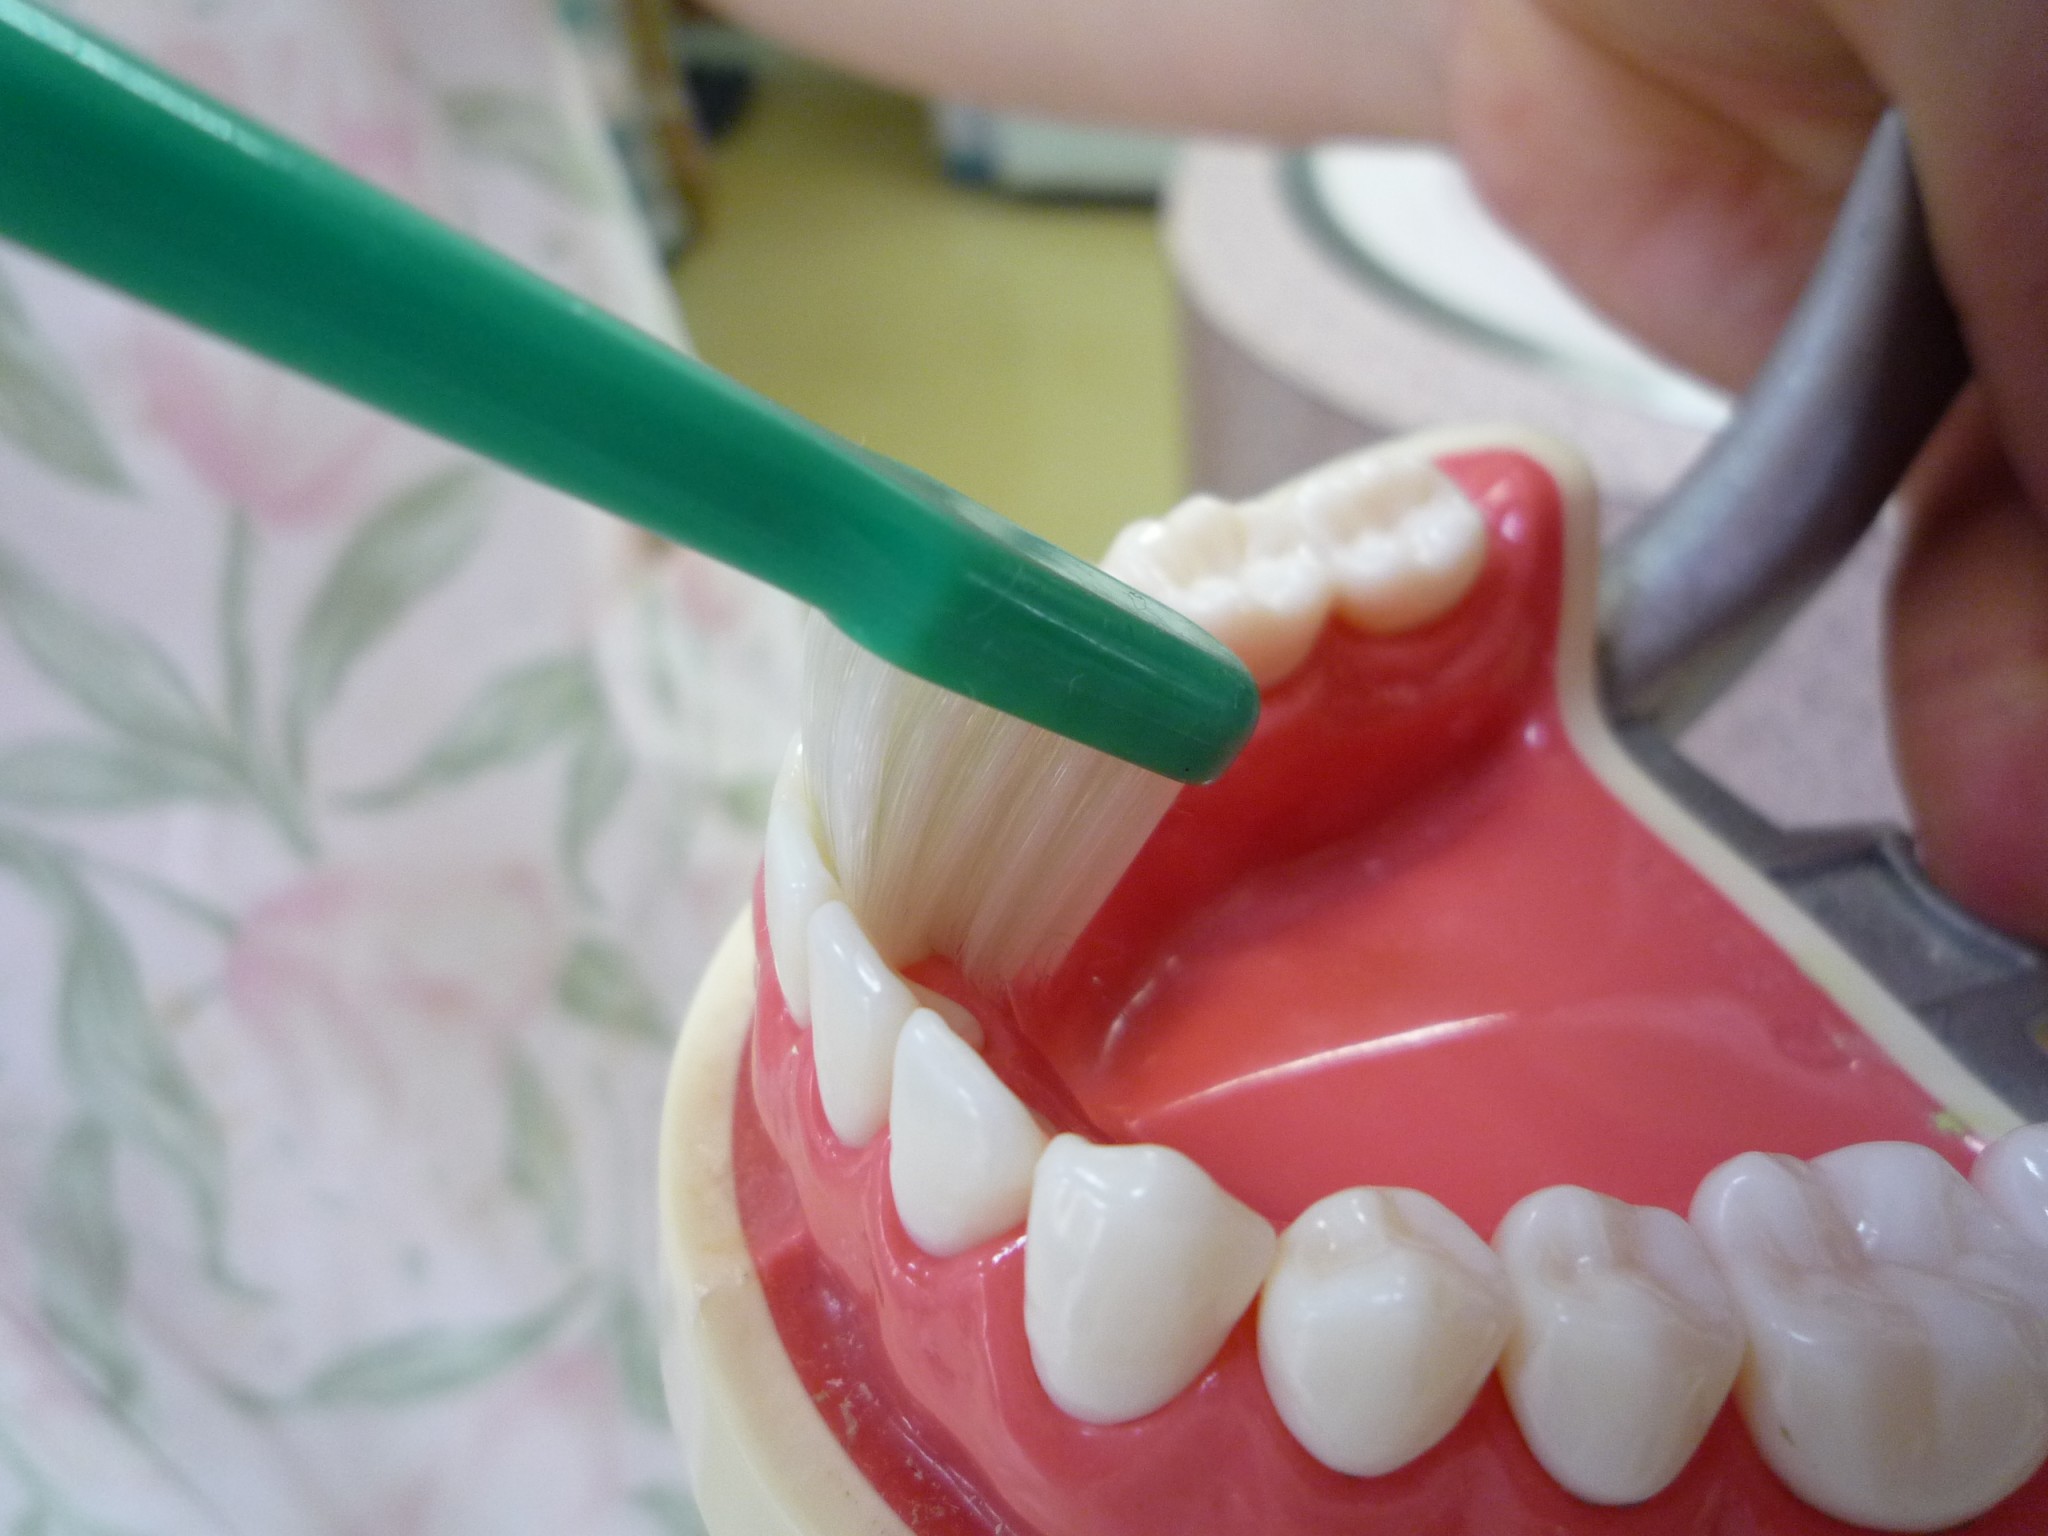 歯磨き し て も 歯 垢 が 残る